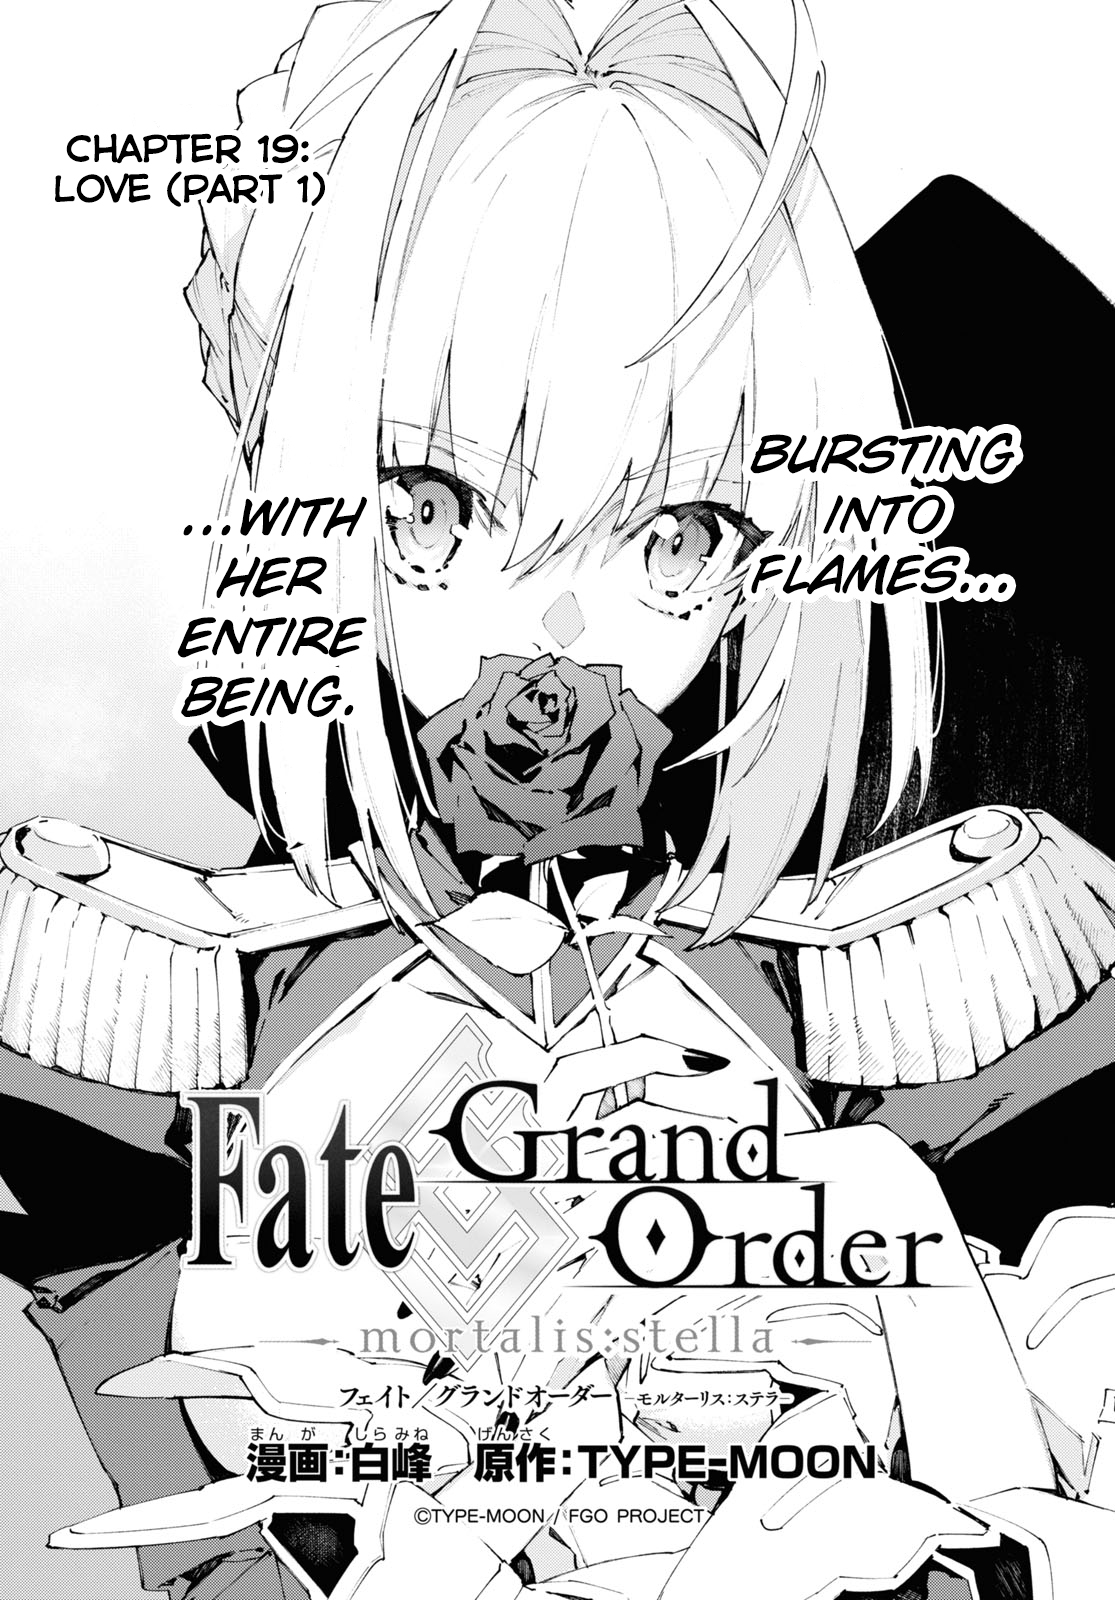 Fate/Grand Order -mortalis:stella- 19.1